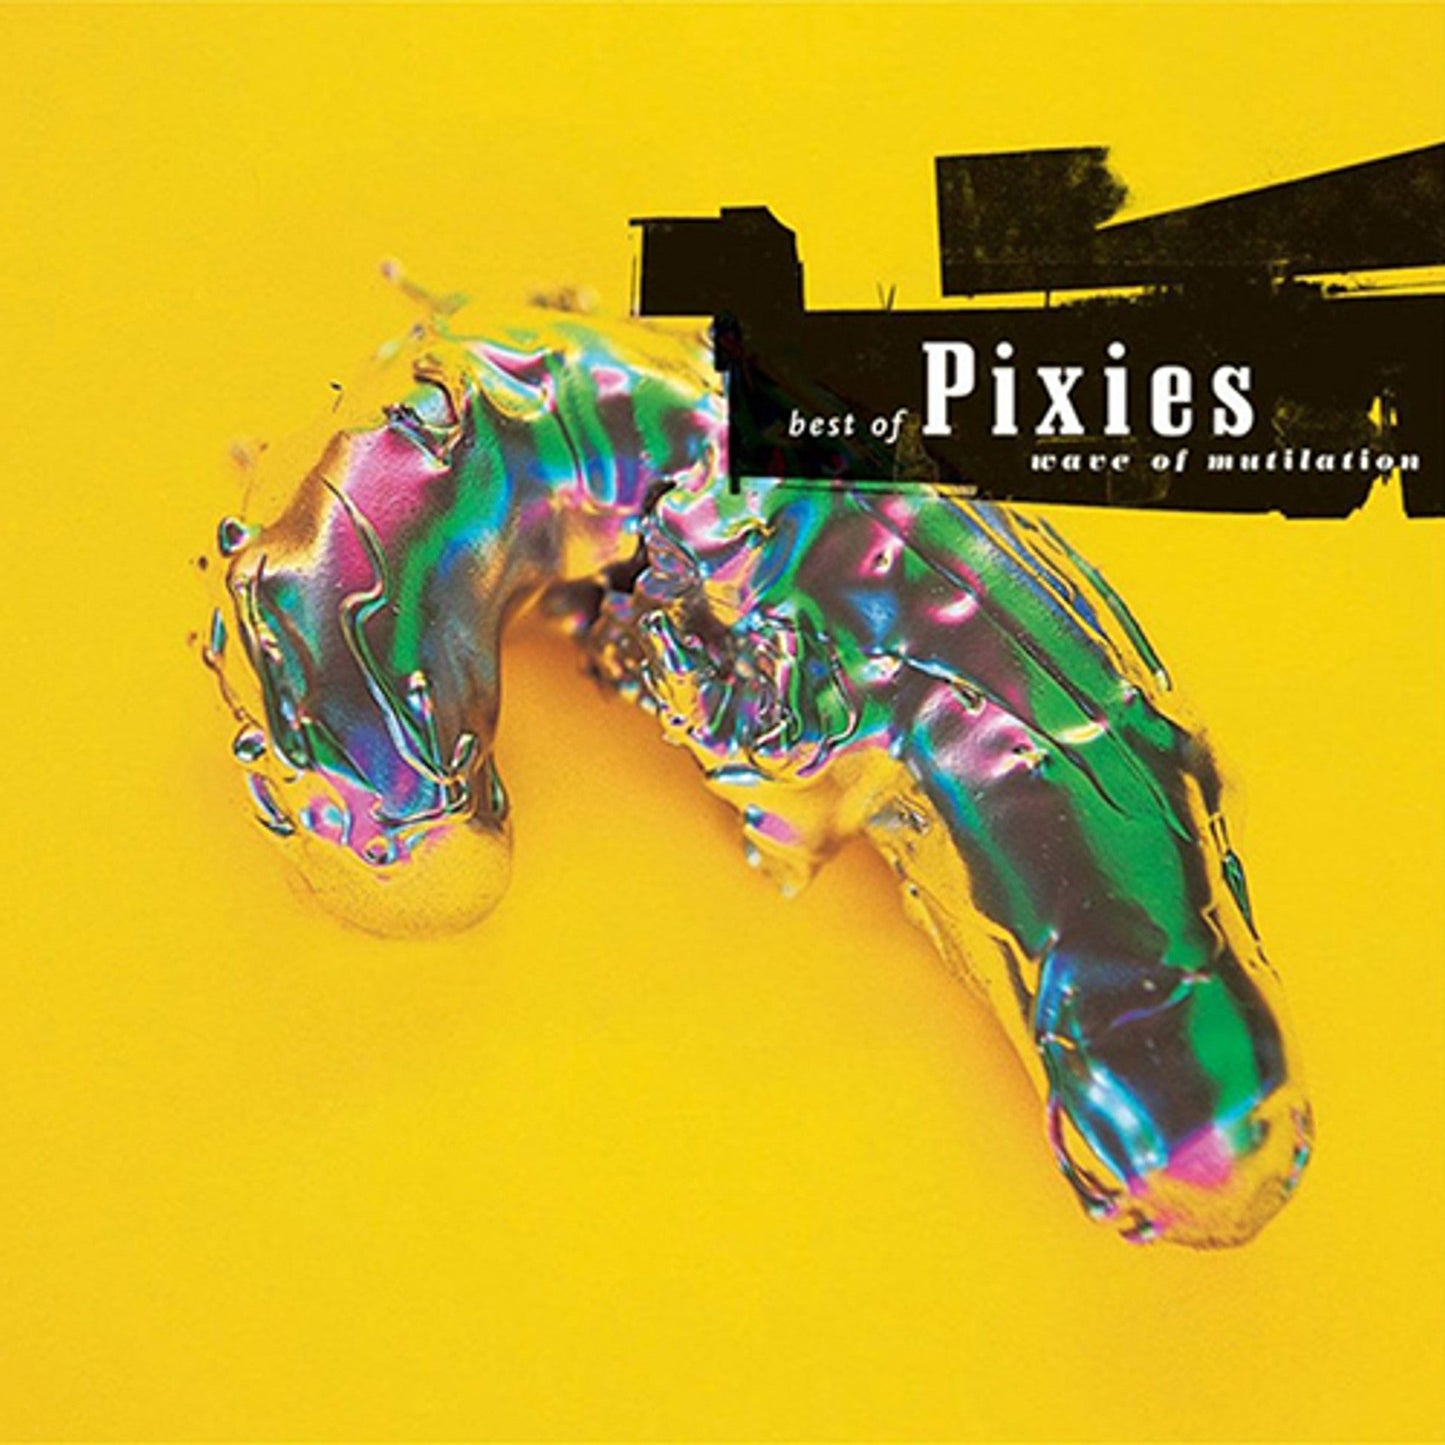 PIXIES - WAVE OF MUTILATION: BEST OF PIXIES - 2-LP - LP DE VINILO